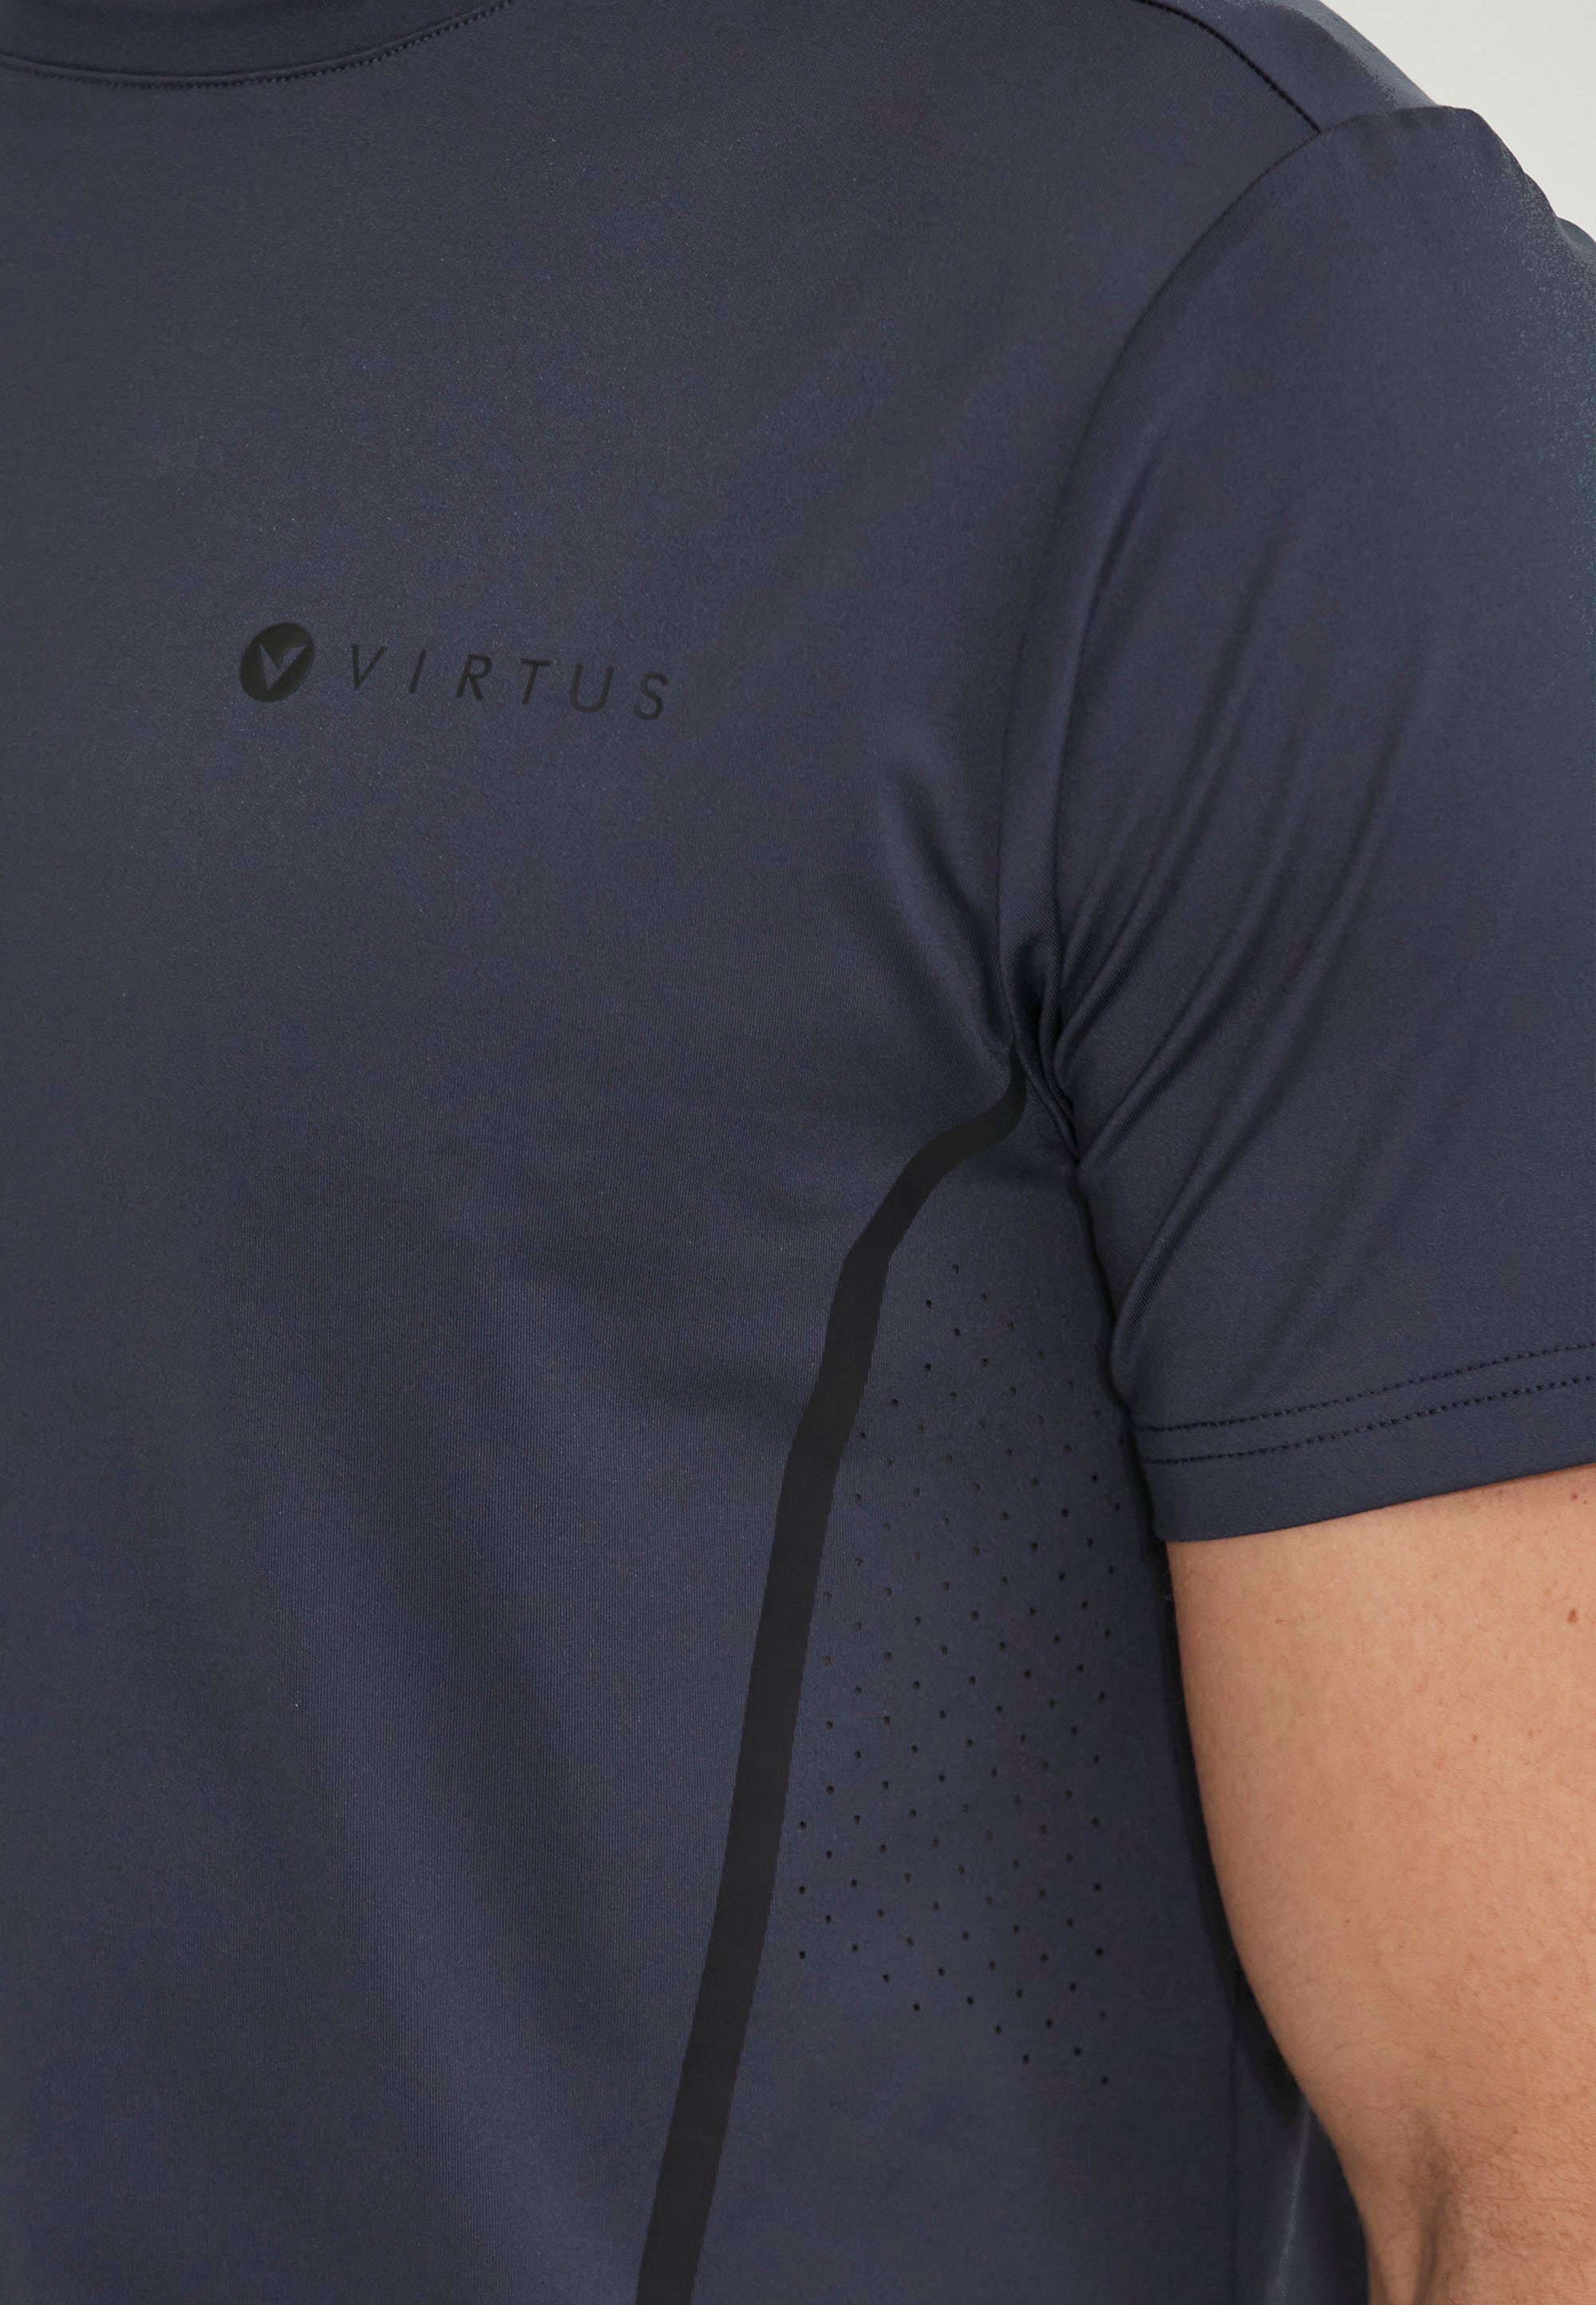 DRY-Technologie QUICK praktischer mit dunkelblau Seranto Virtus Fleeceshirt